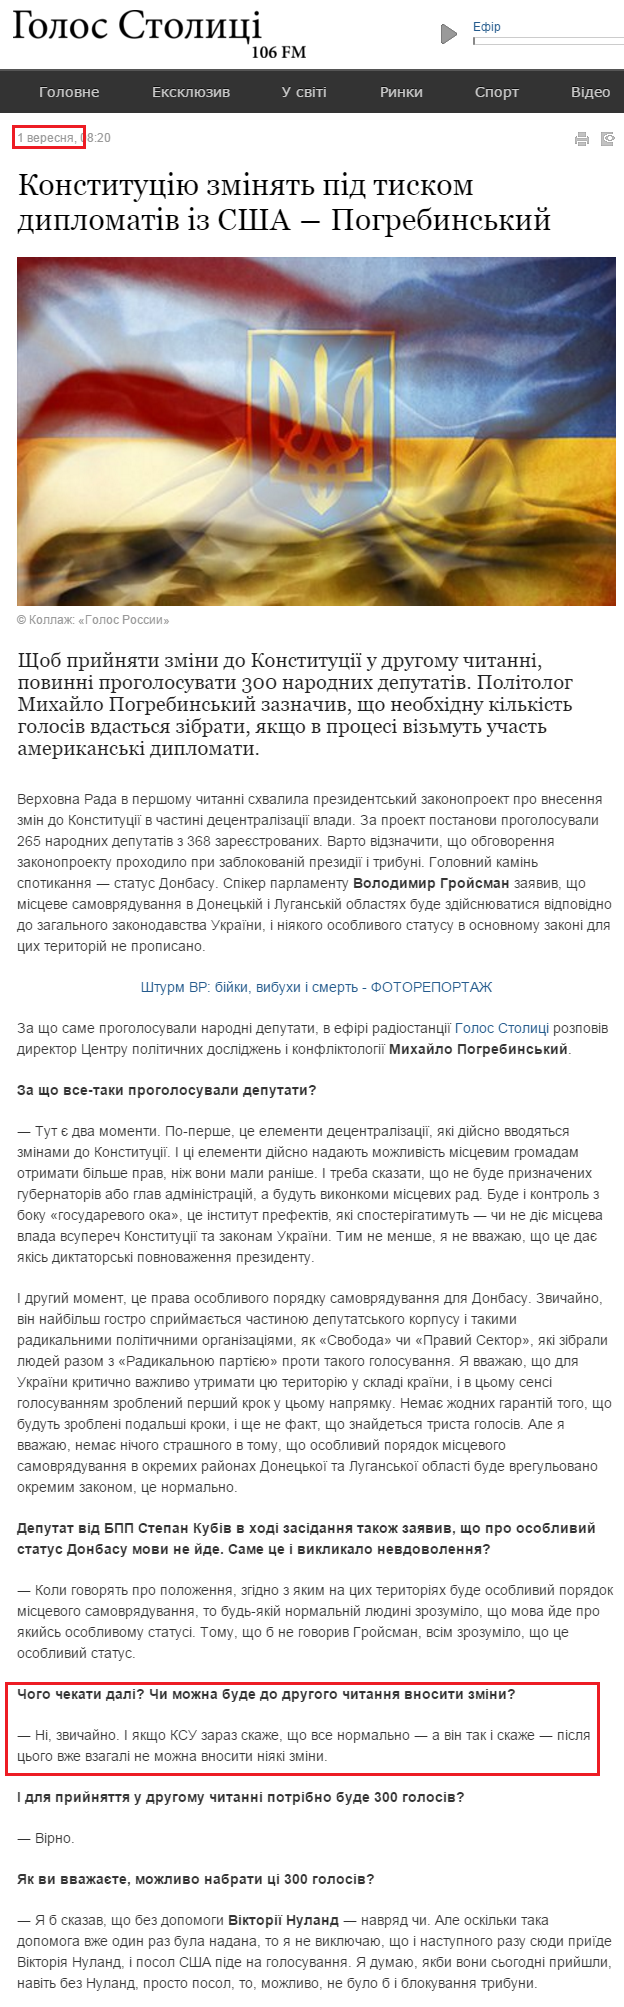 http://newsradio.com.ua/2015_09_01/Konstituc-ju-zm-njat-p-d-tiskom-diplomat-v-z-SSHA-Pogrebinskij-4079/